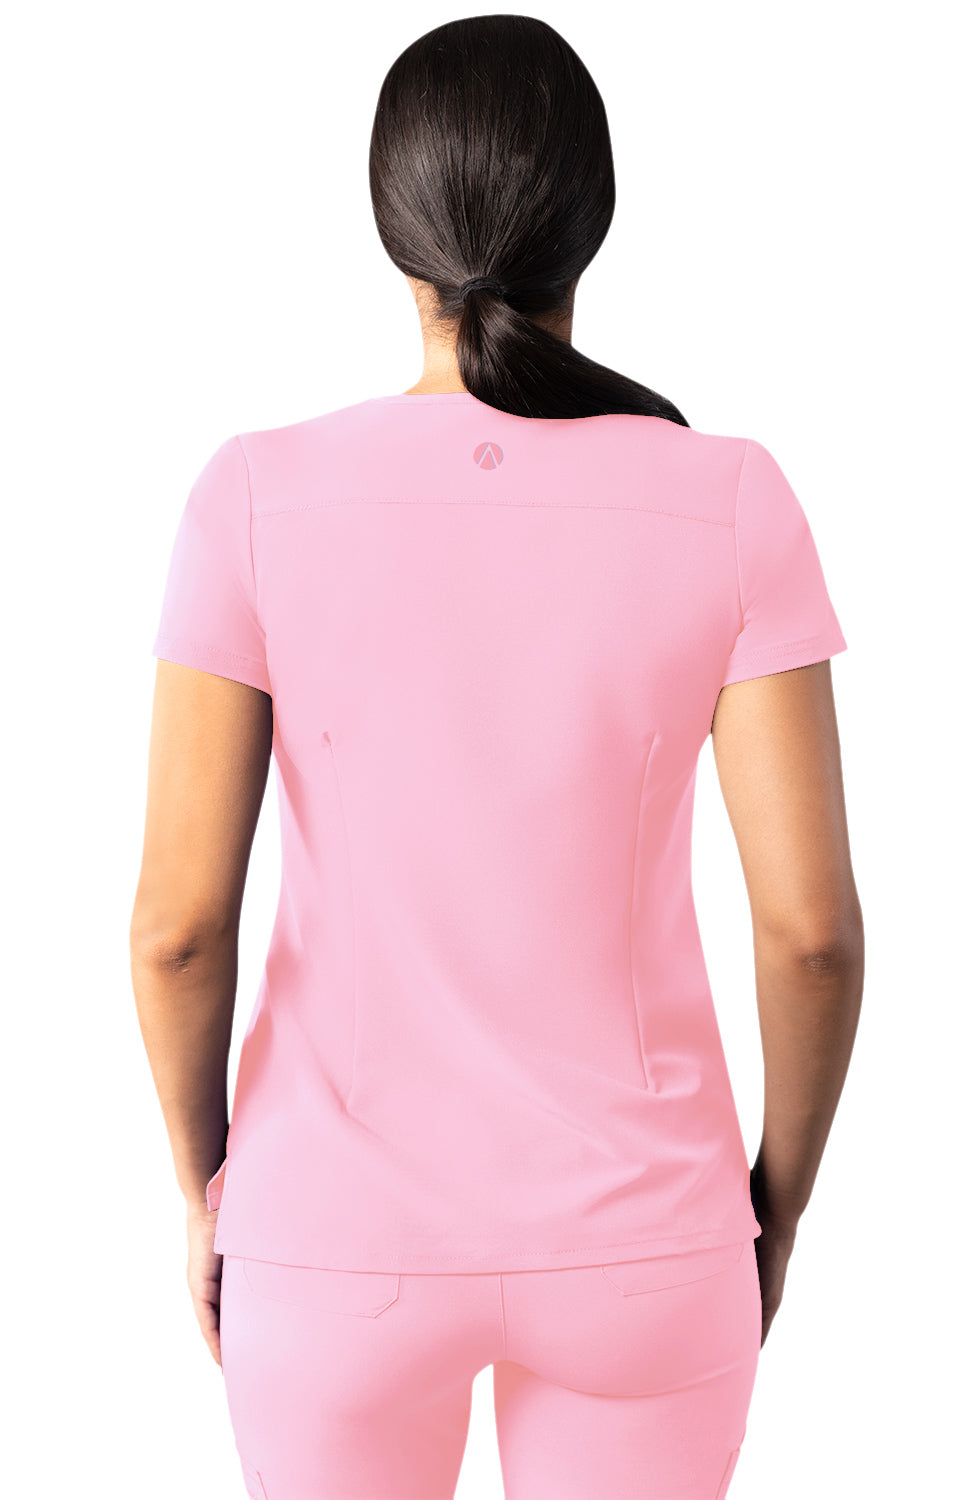 Soft Pink Modern V-Neck Top